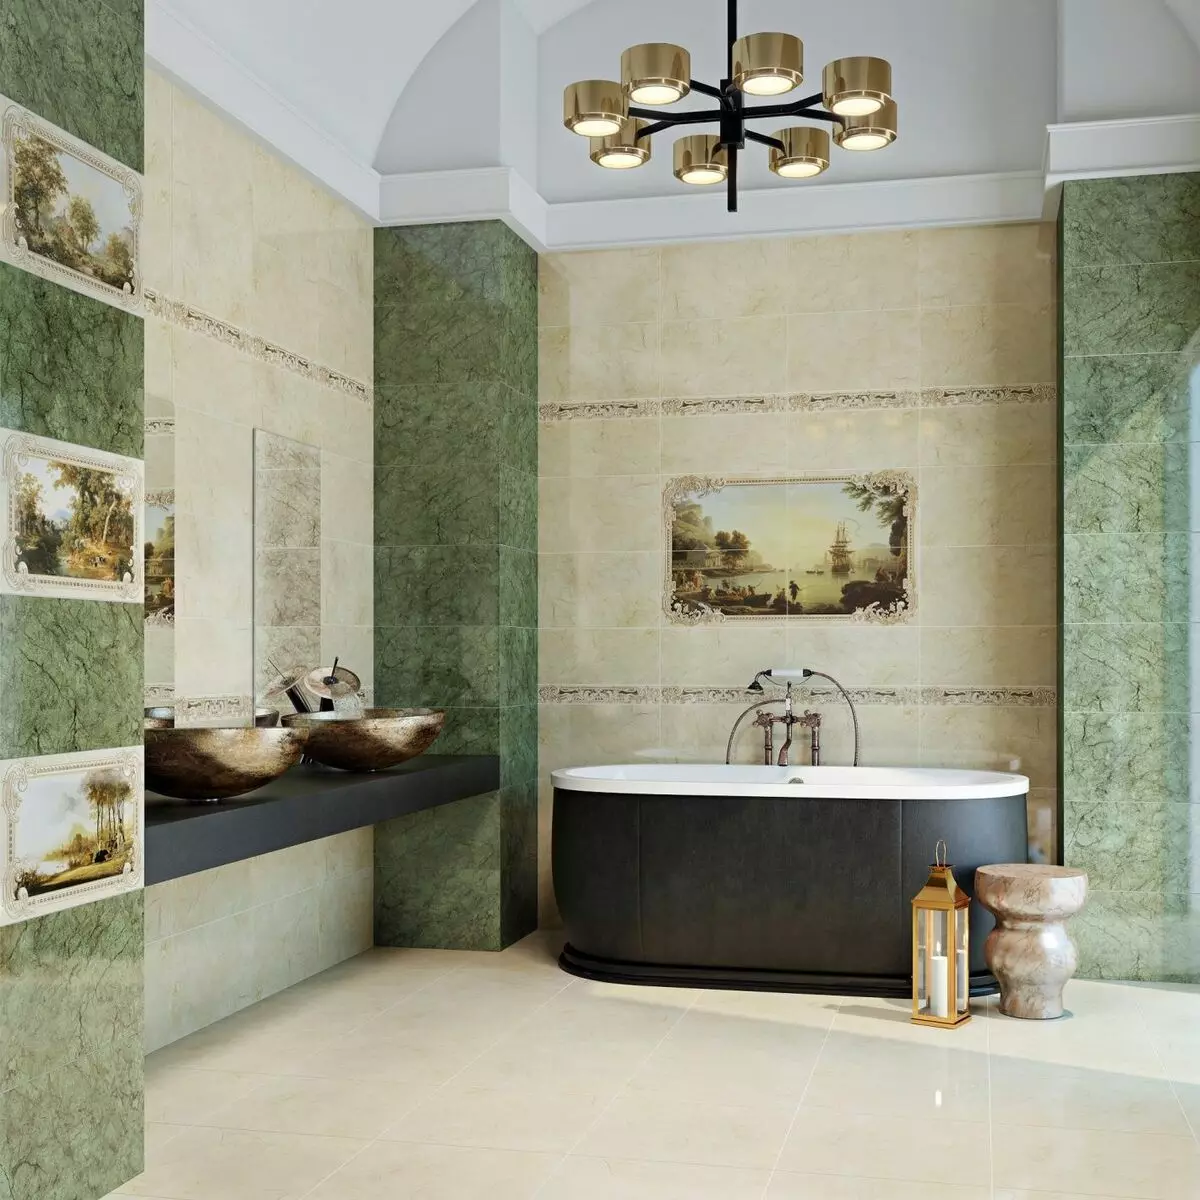 Tempes kamar mandi Rusia: keramik sareng ubin sanés pikeun kamar mandi produsén Rusia. Desain ubin produksi Rusia 10124_31